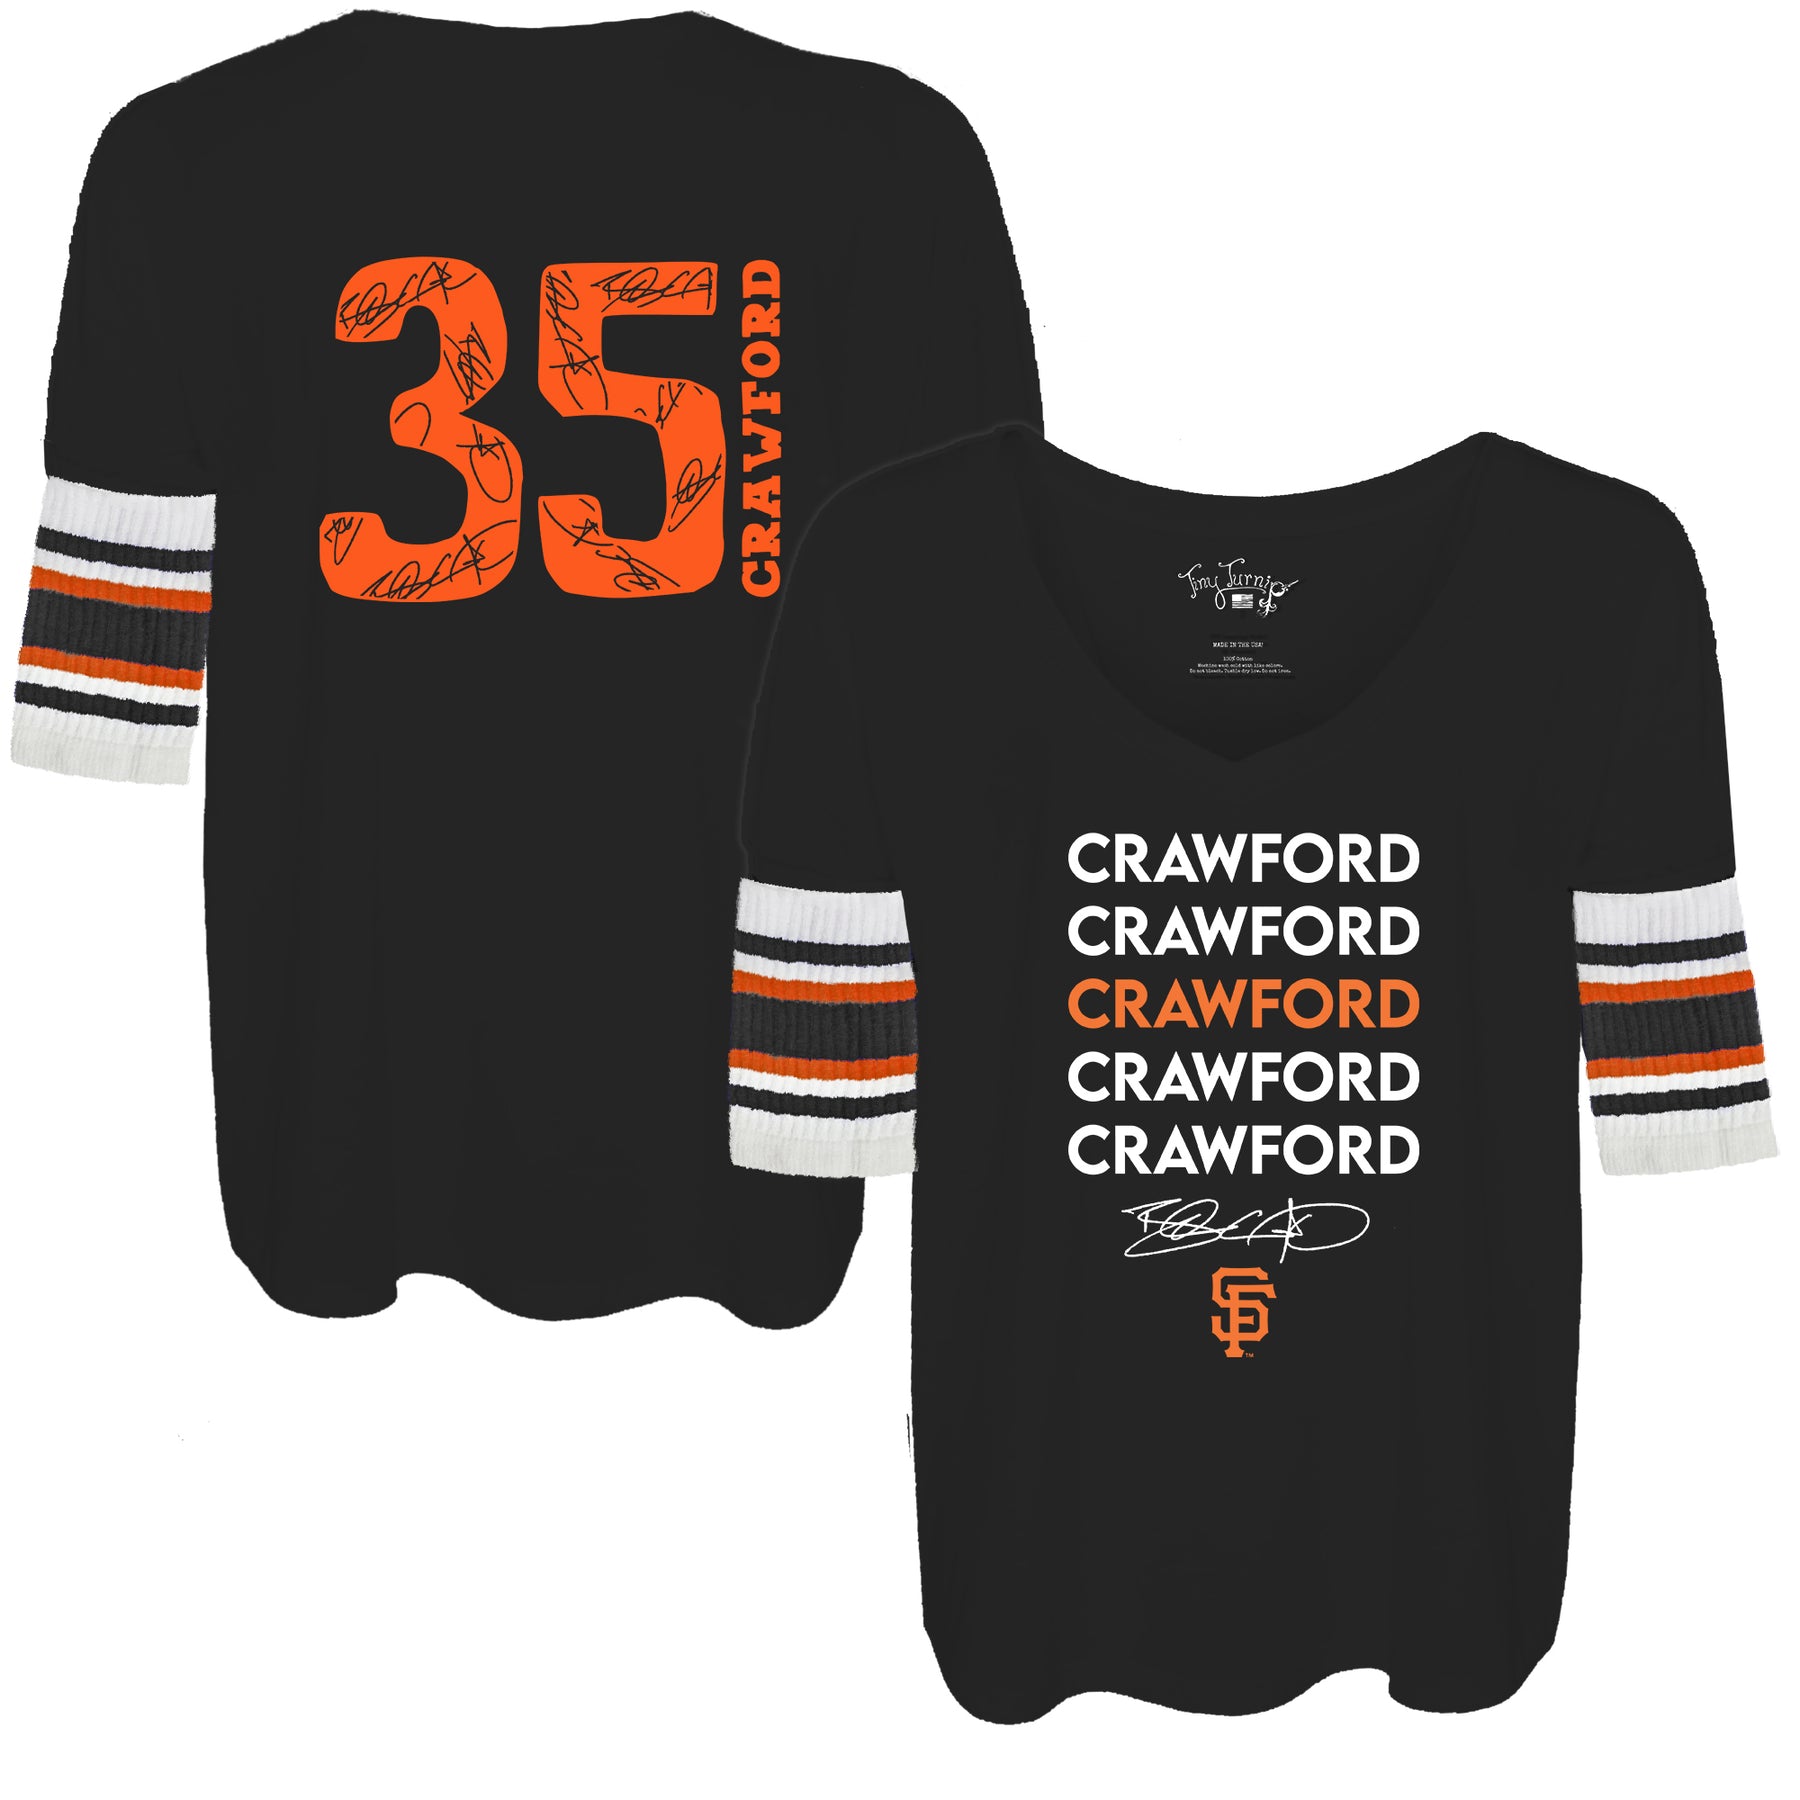 Brandon Crawford Number 35 San Francisco Giants Black Baseball Jersey - T- shirts Low Price